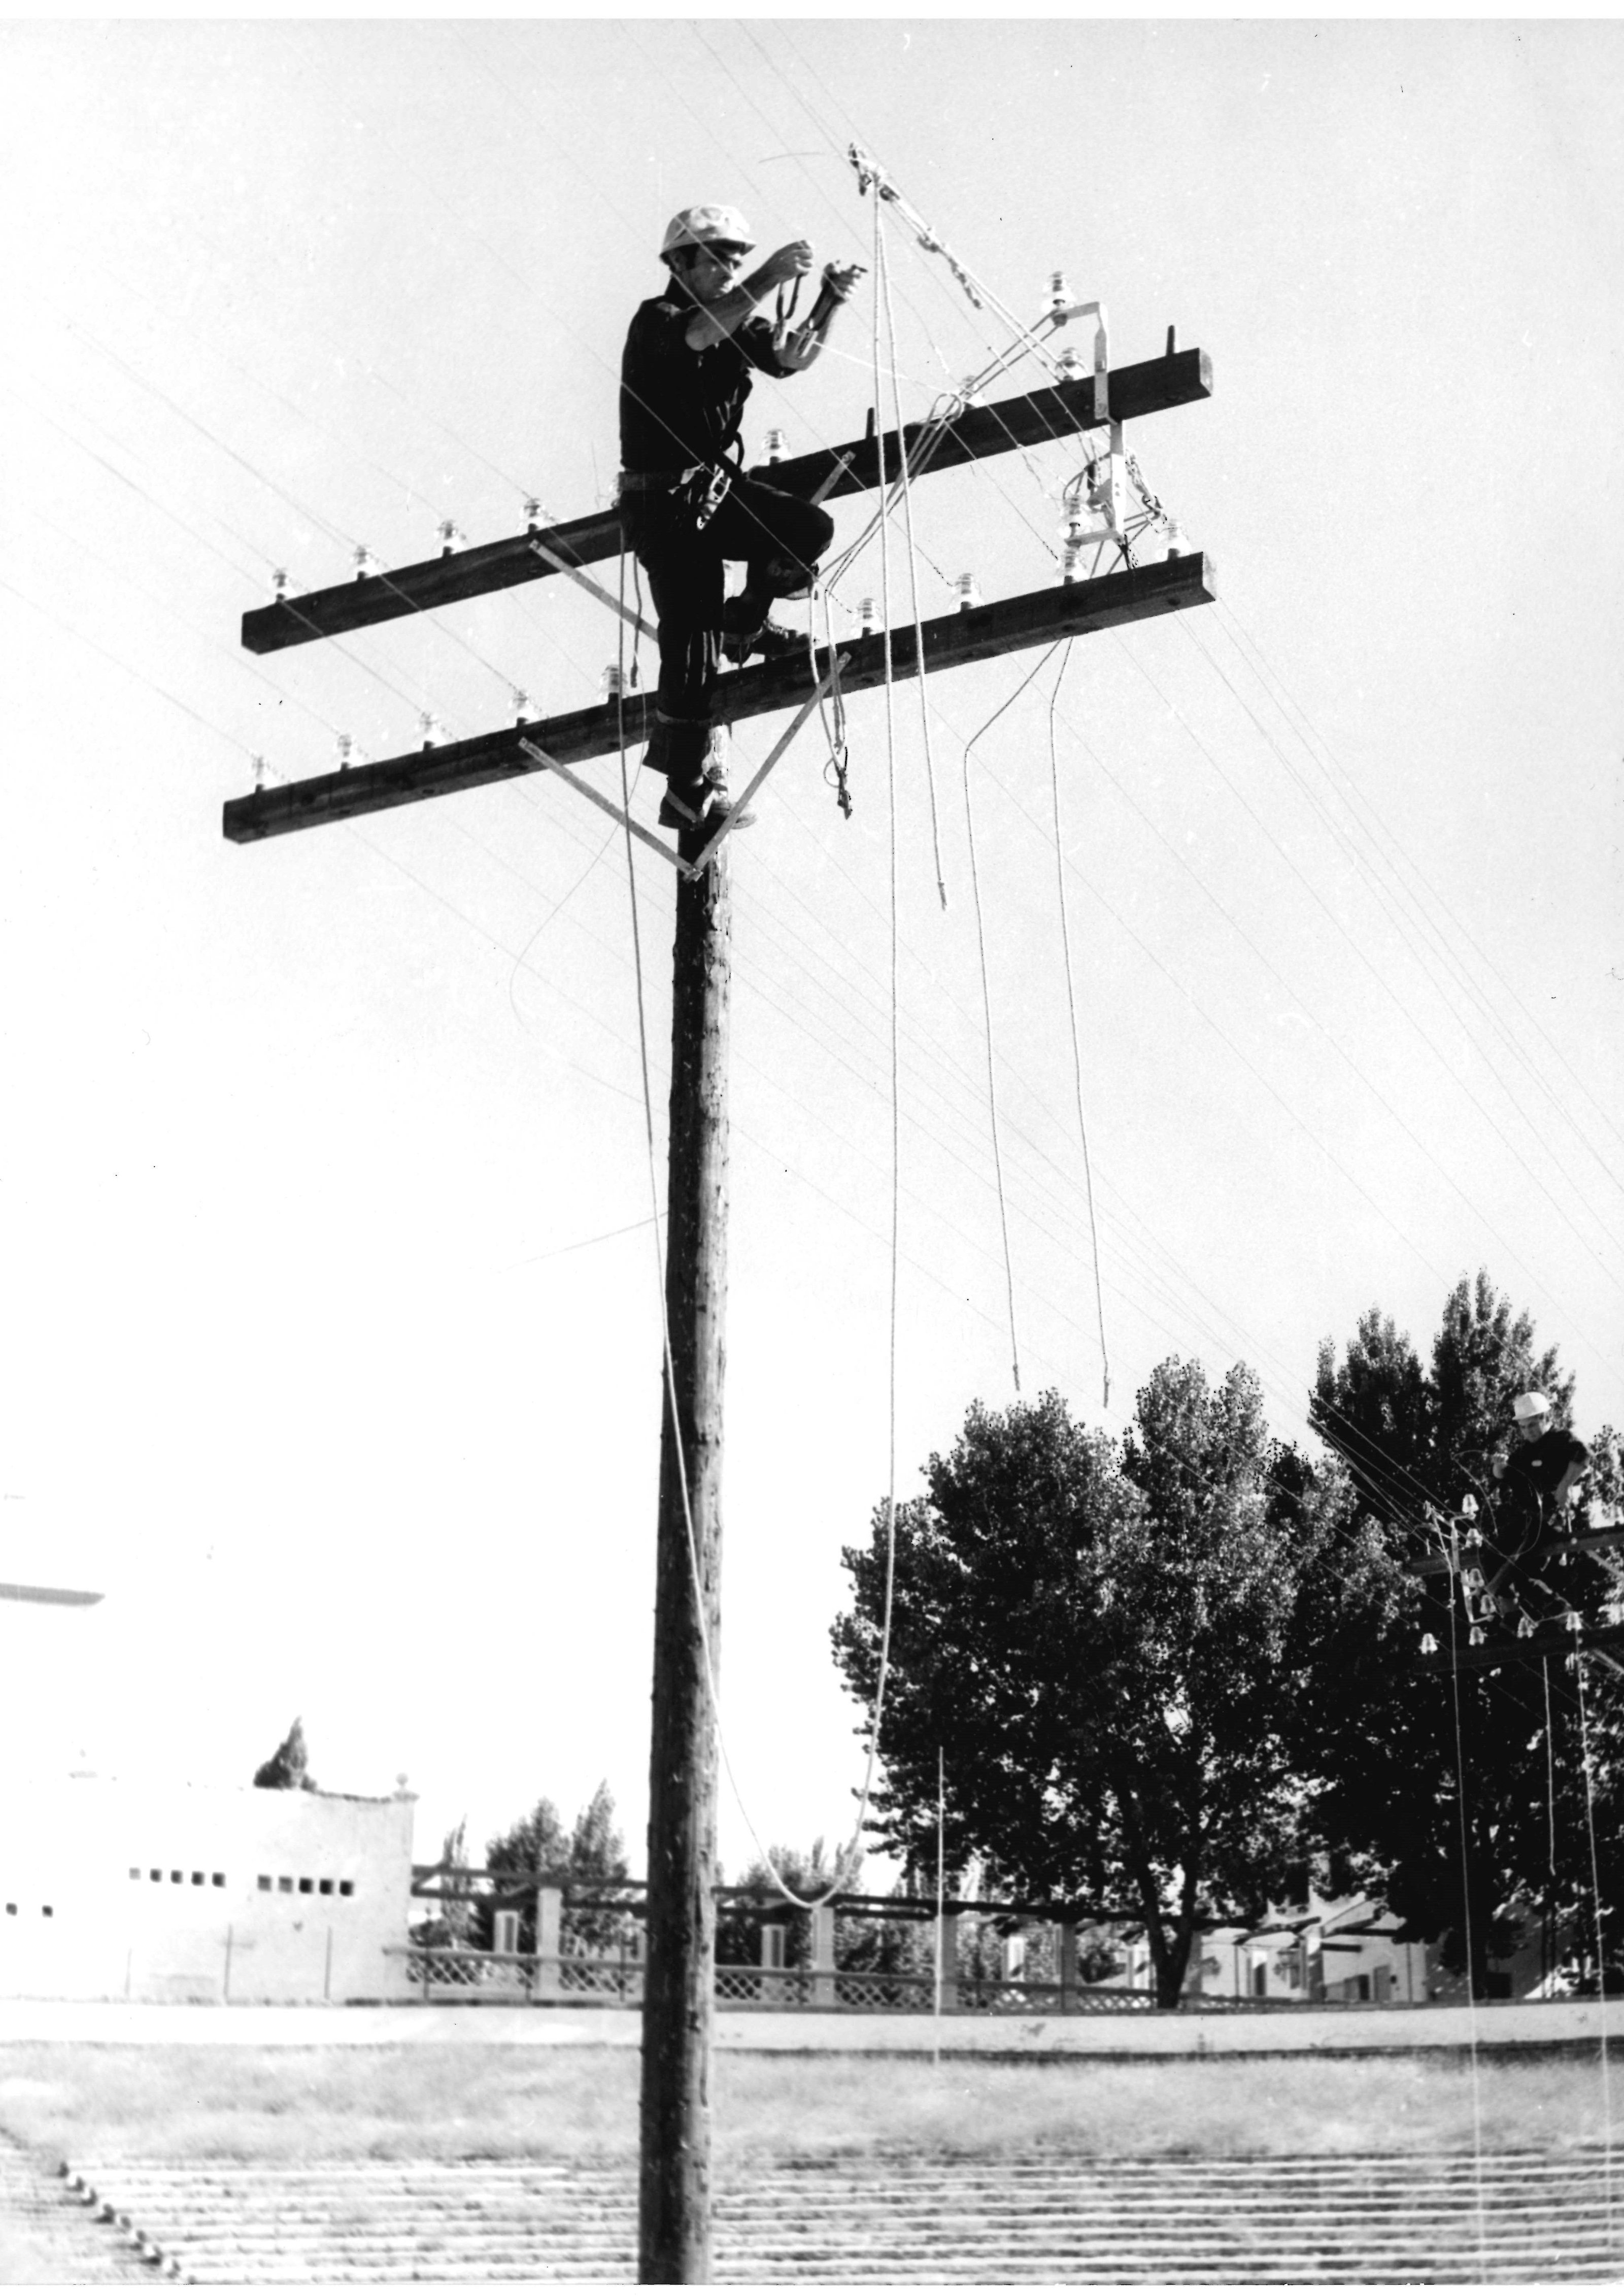 Instalación antenas telefónicas